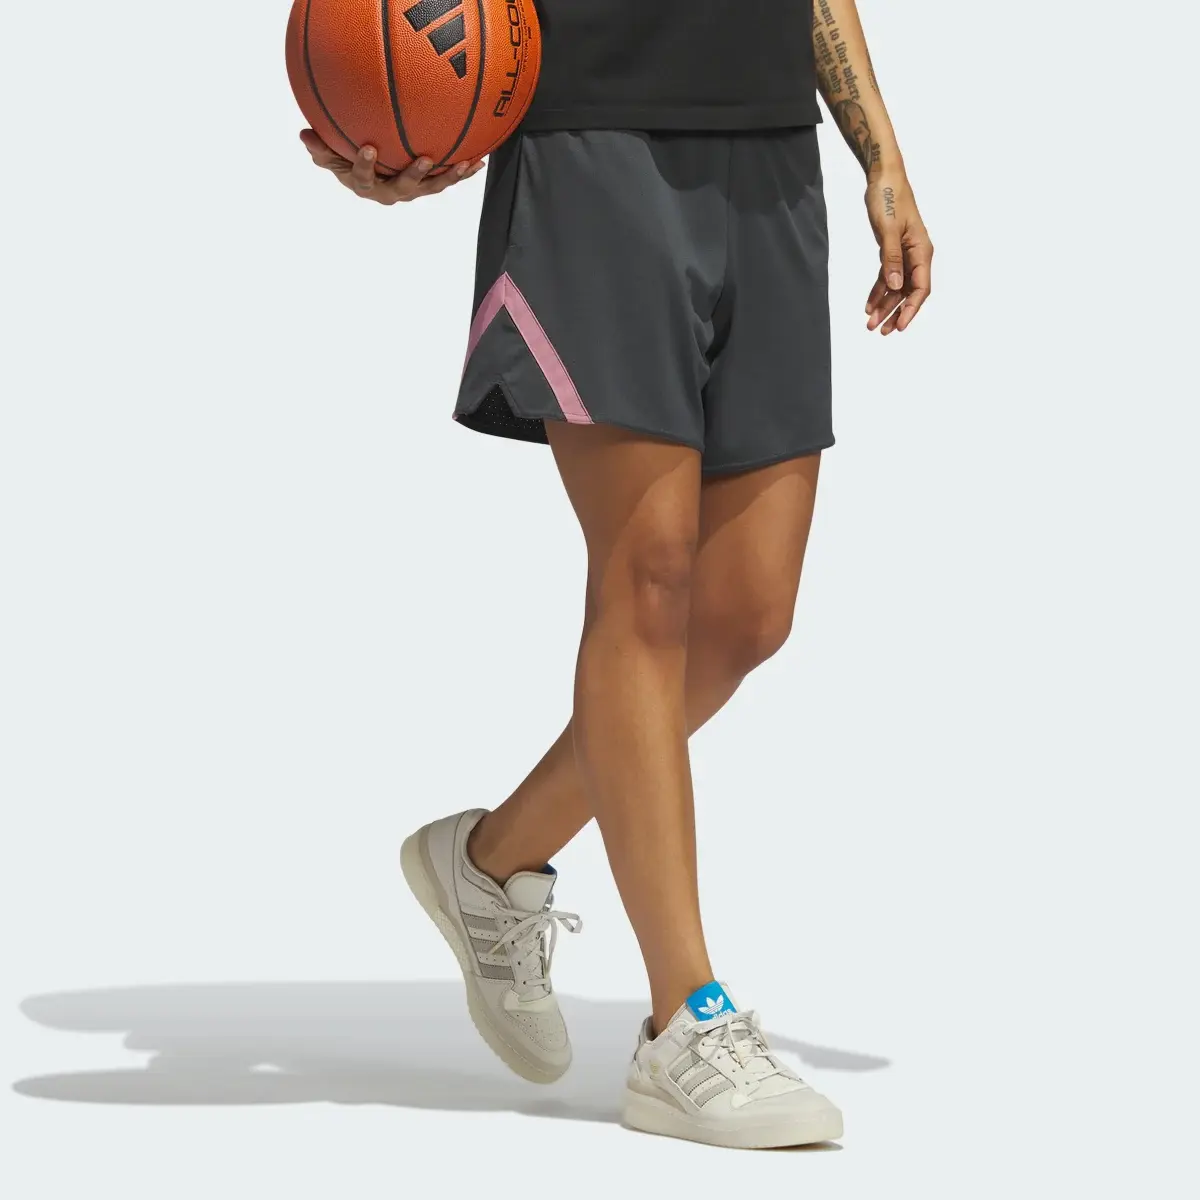 Adidas Select Basketball Shorts. 3